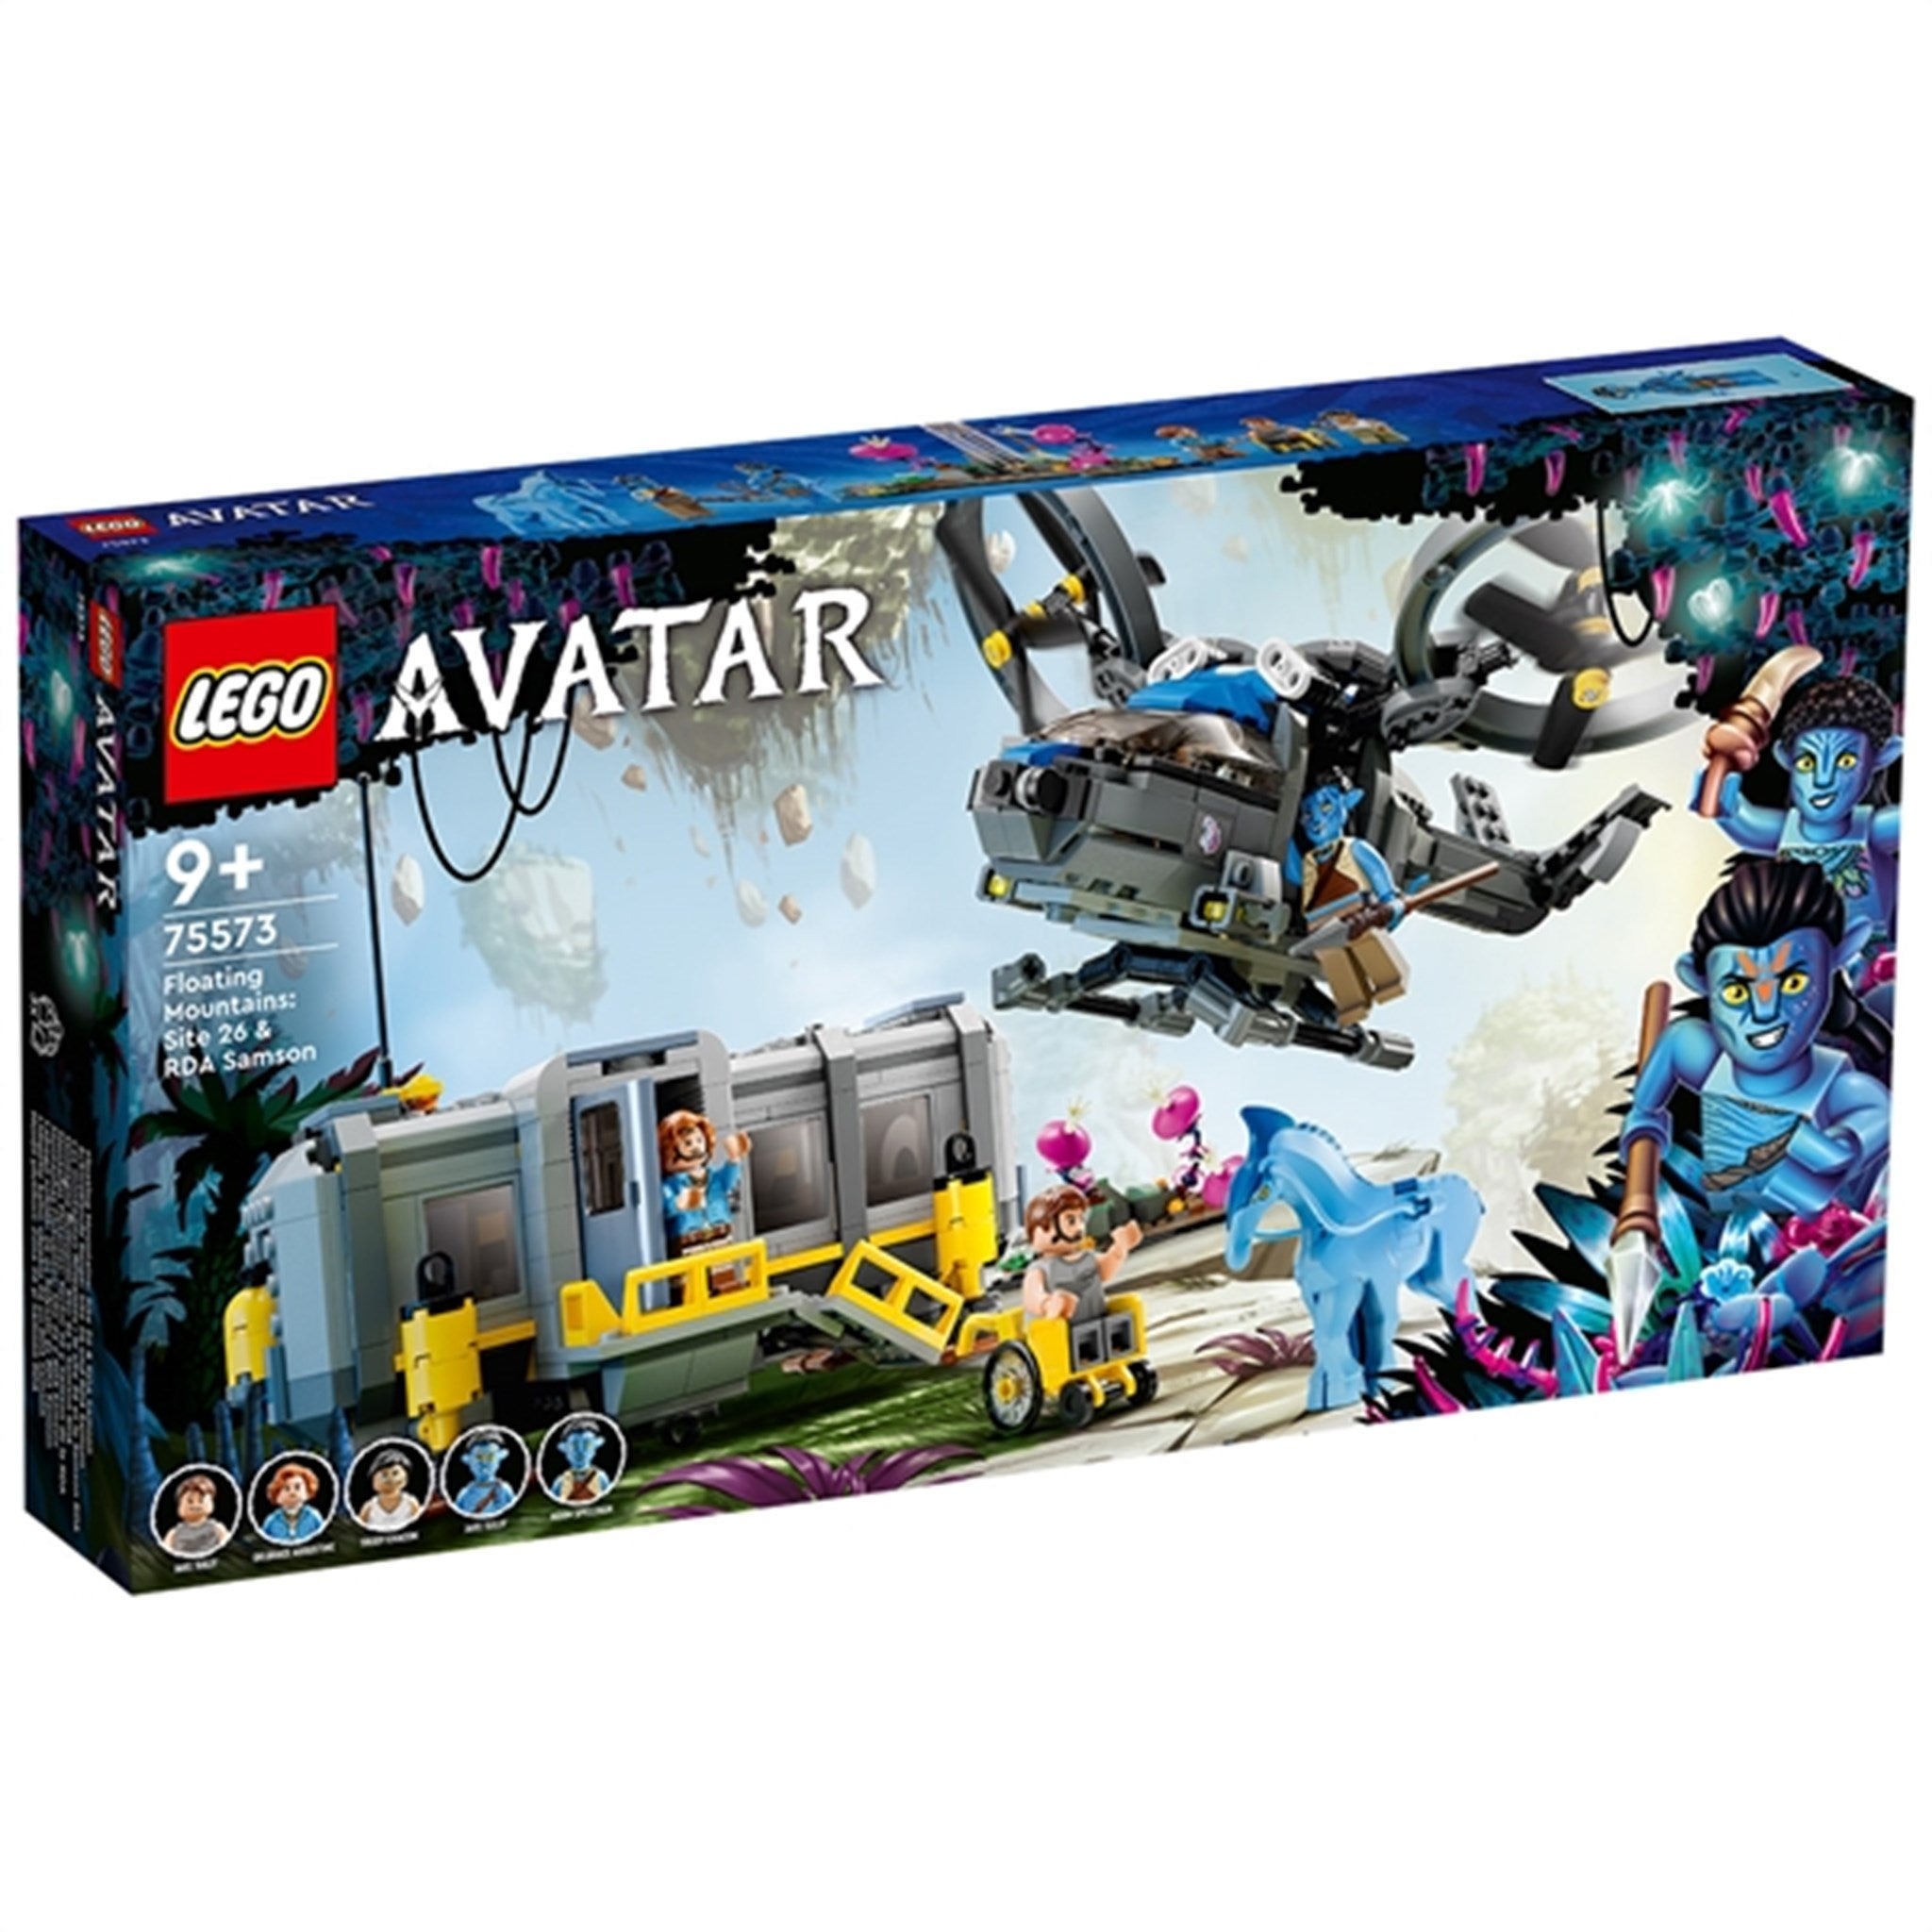 LEGO® Avatar De Svevende Fjellene: Anlegg 26 og RDA Samson